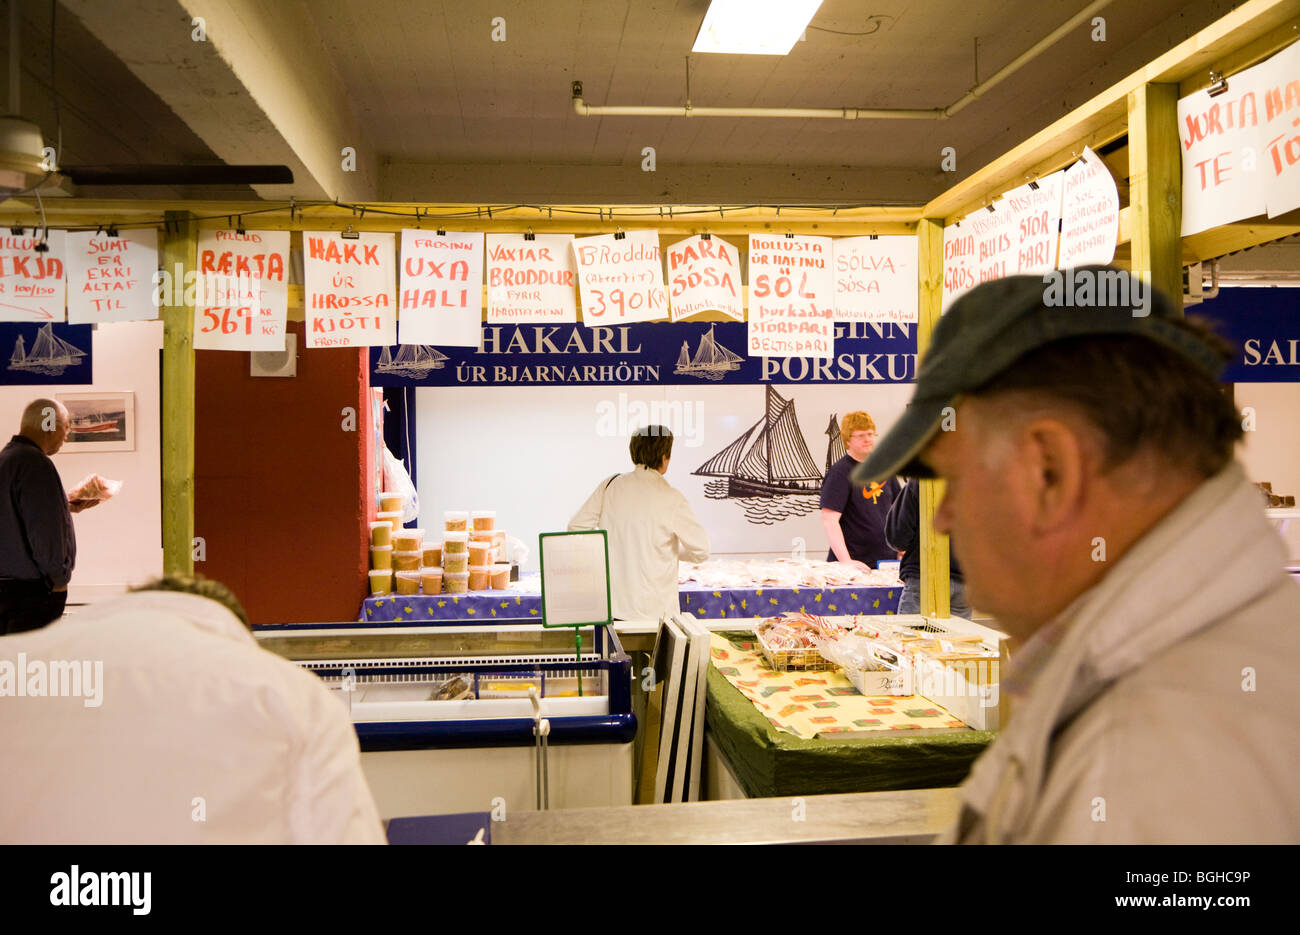 Gli amanti dello shopping l'acquisto di pesce fresco al Kolaportid mercatino delle pulci. Il centro di Reykjavik, a sud-ovest dell'Islanda. Foto Stock